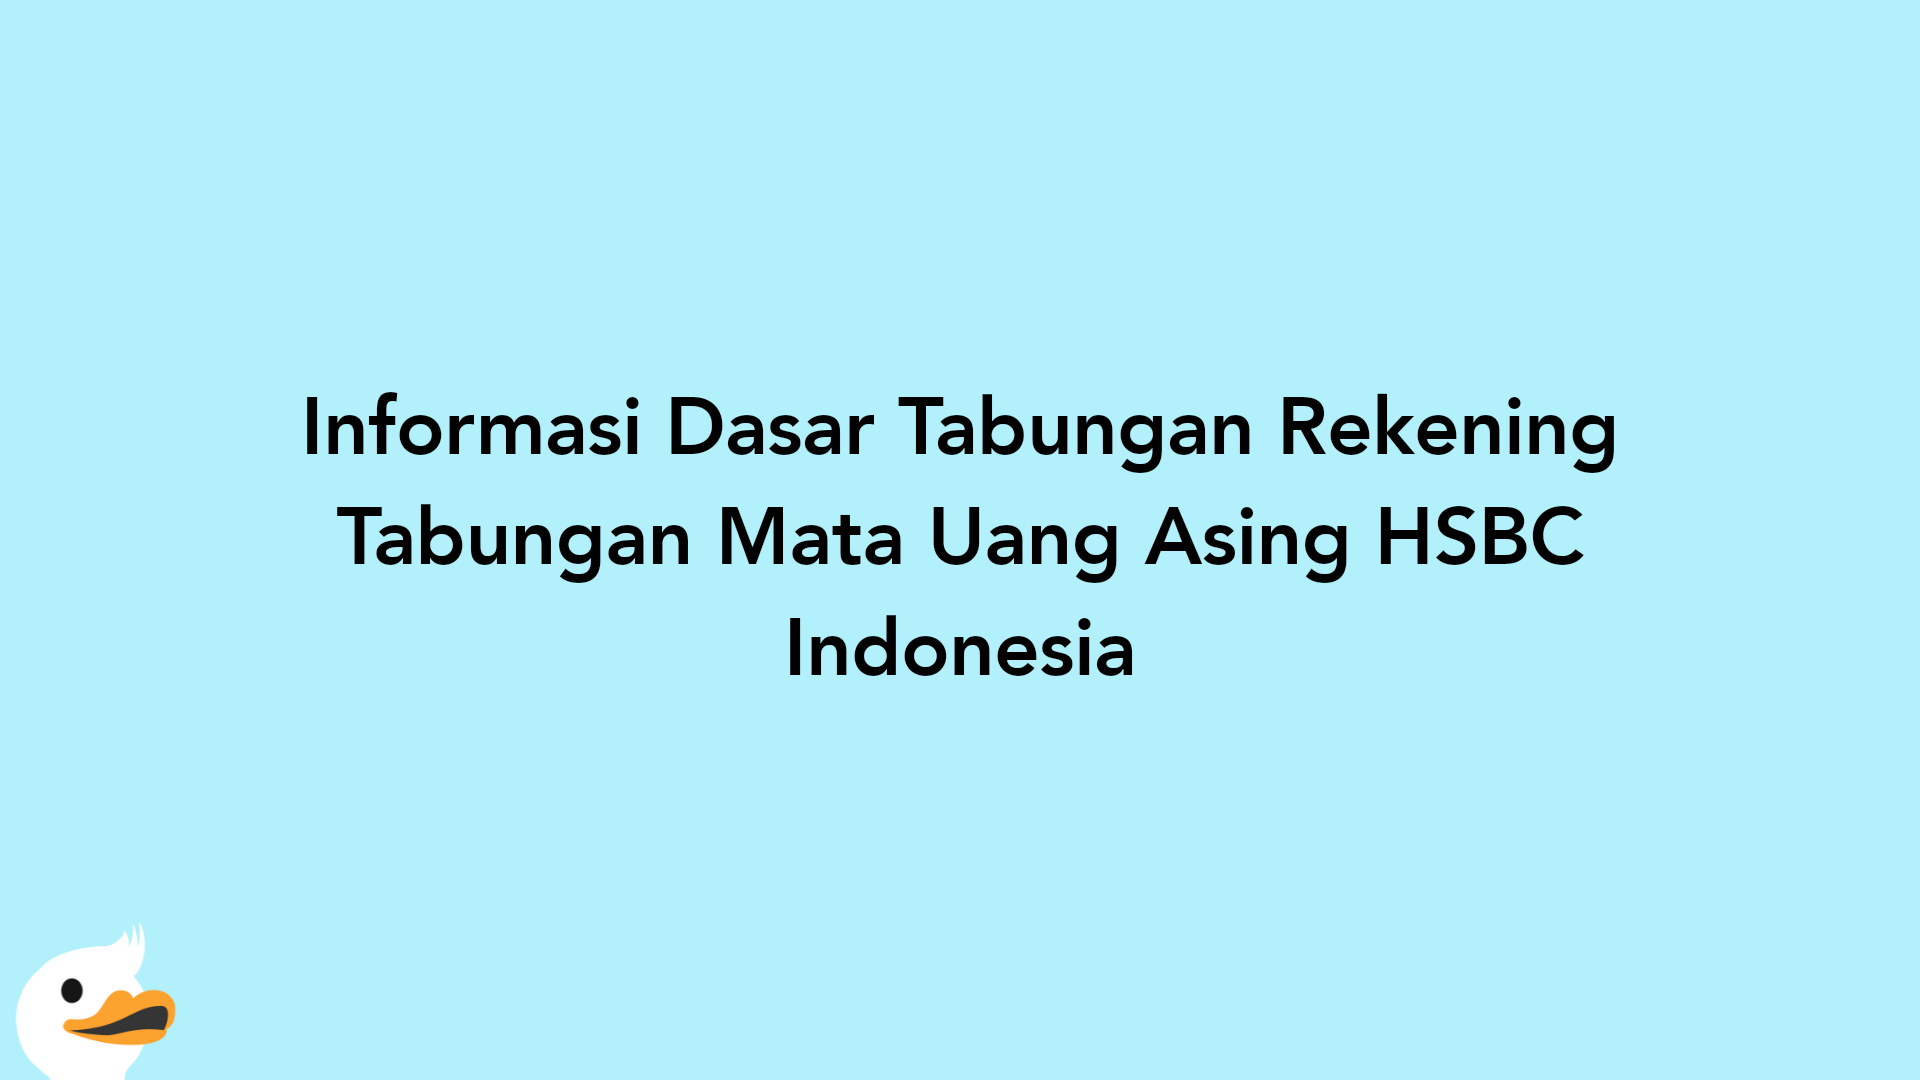 Informasi Dasar Tabungan Rekening Tabungan Mata Uang Asing HSBC Indonesia